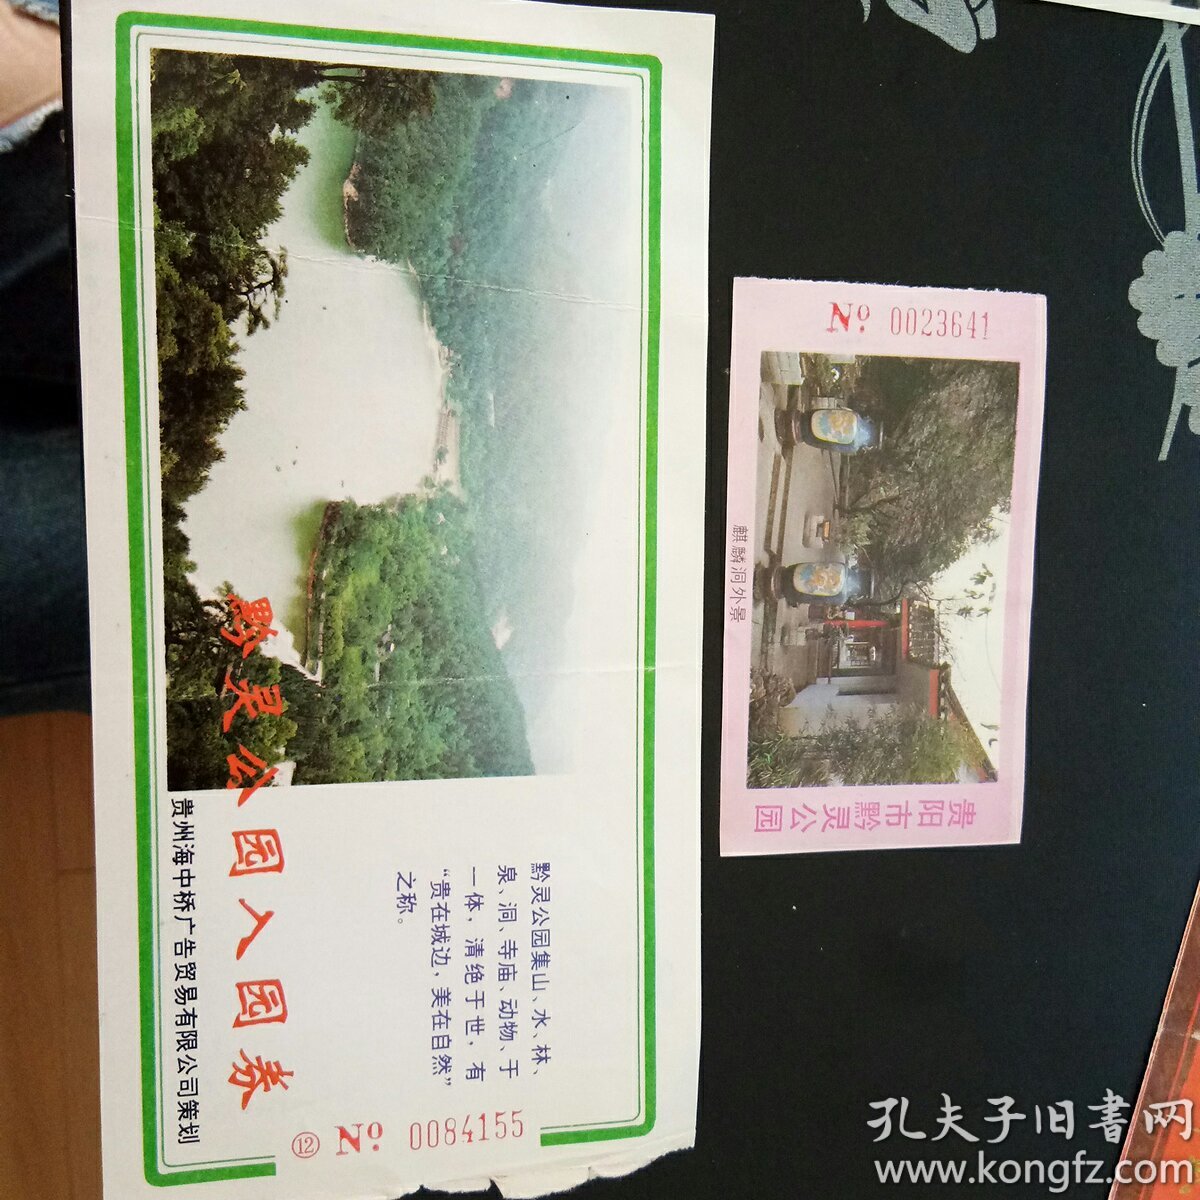 贵阳市黔灵公园门票(两张)